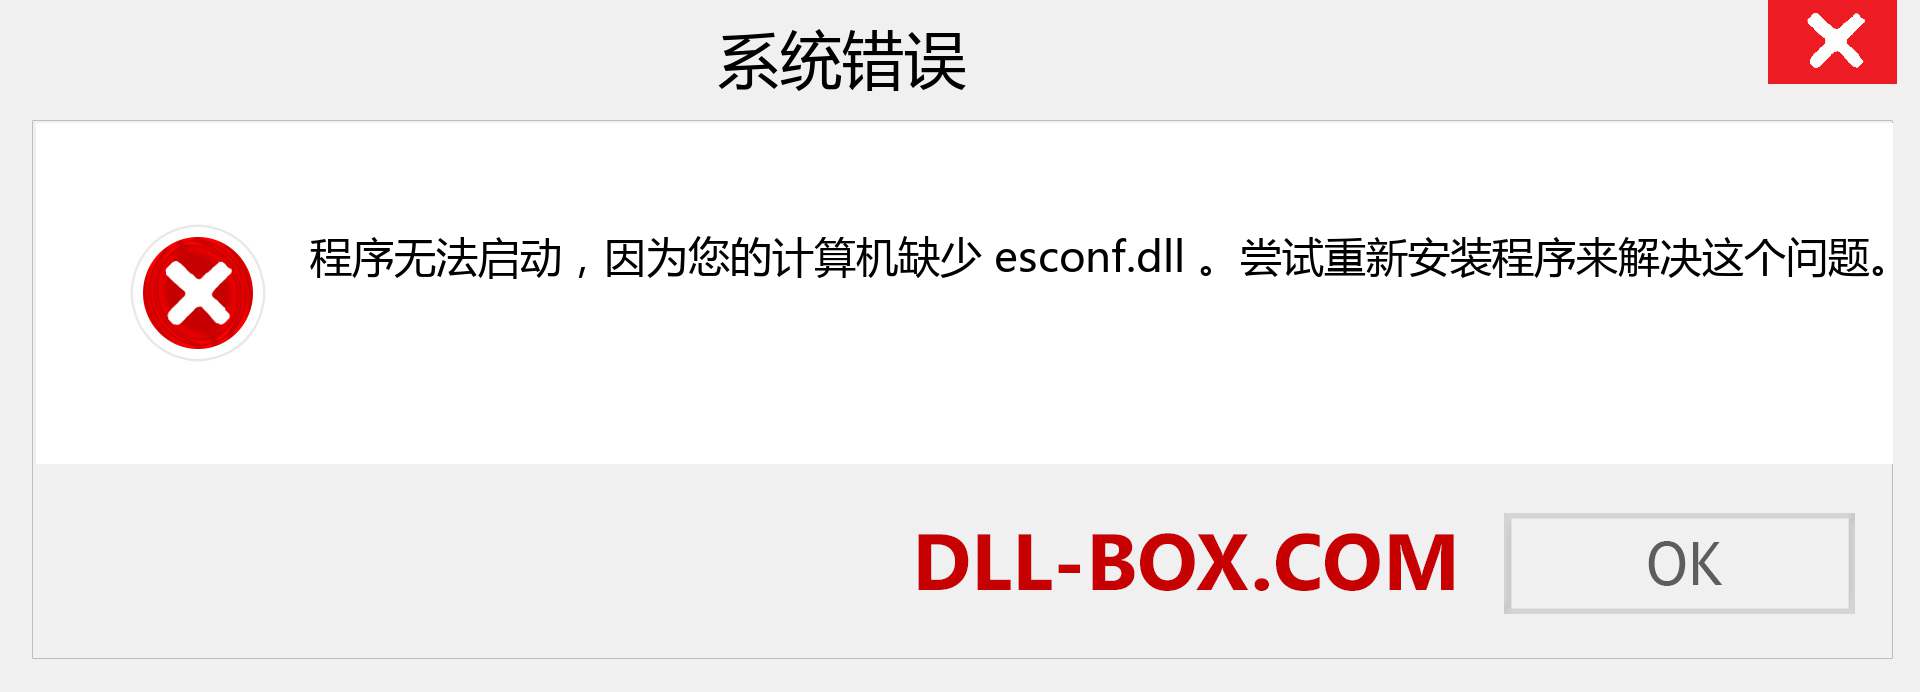 esconf.dll 文件丢失？。 适用于 Windows 7、8、10 的下载 - 修复 Windows、照片、图像上的 esconf dll 丢失错误